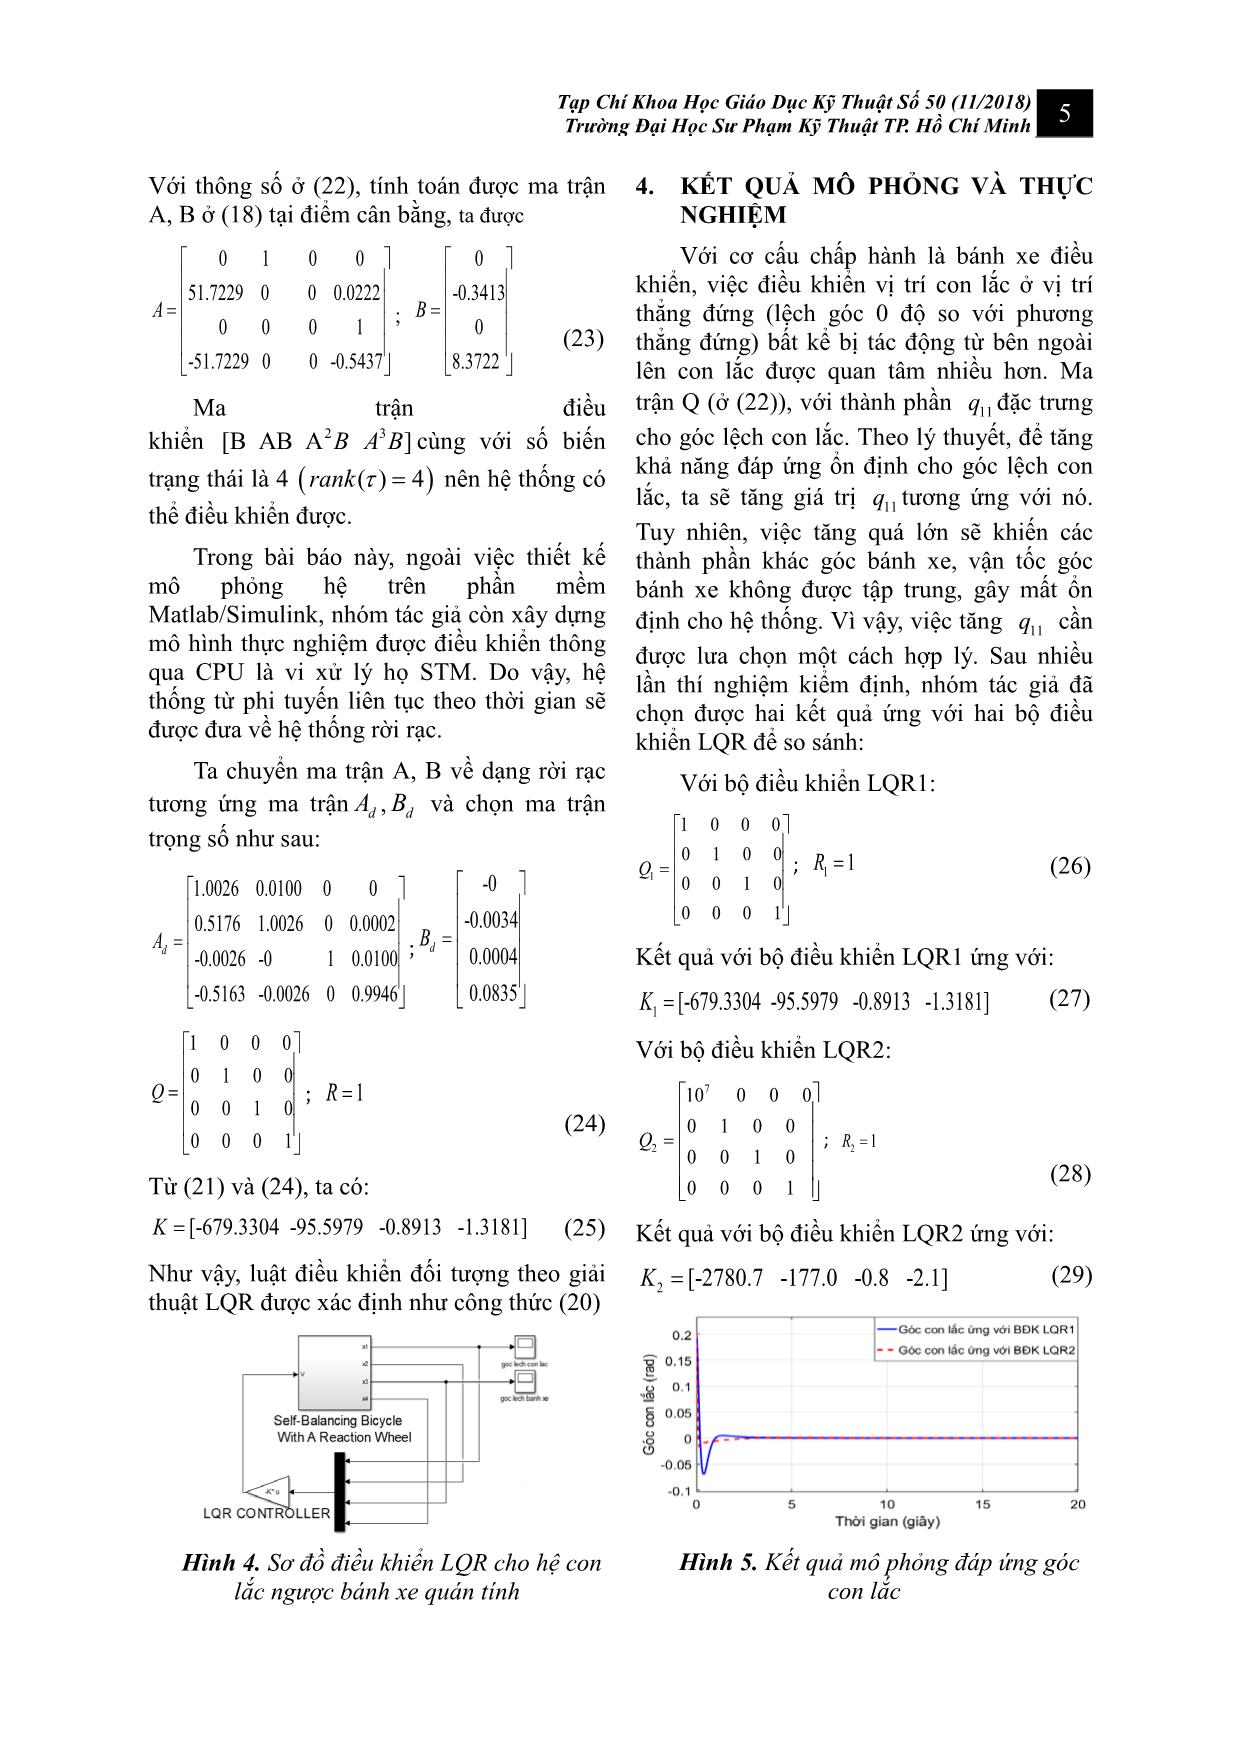 Điều khiển hệ con lắc ngược bánh xe quán tính sử dụng giải thuật điều khiển LQR: Mô phỏng và thực nghiệm trang 5